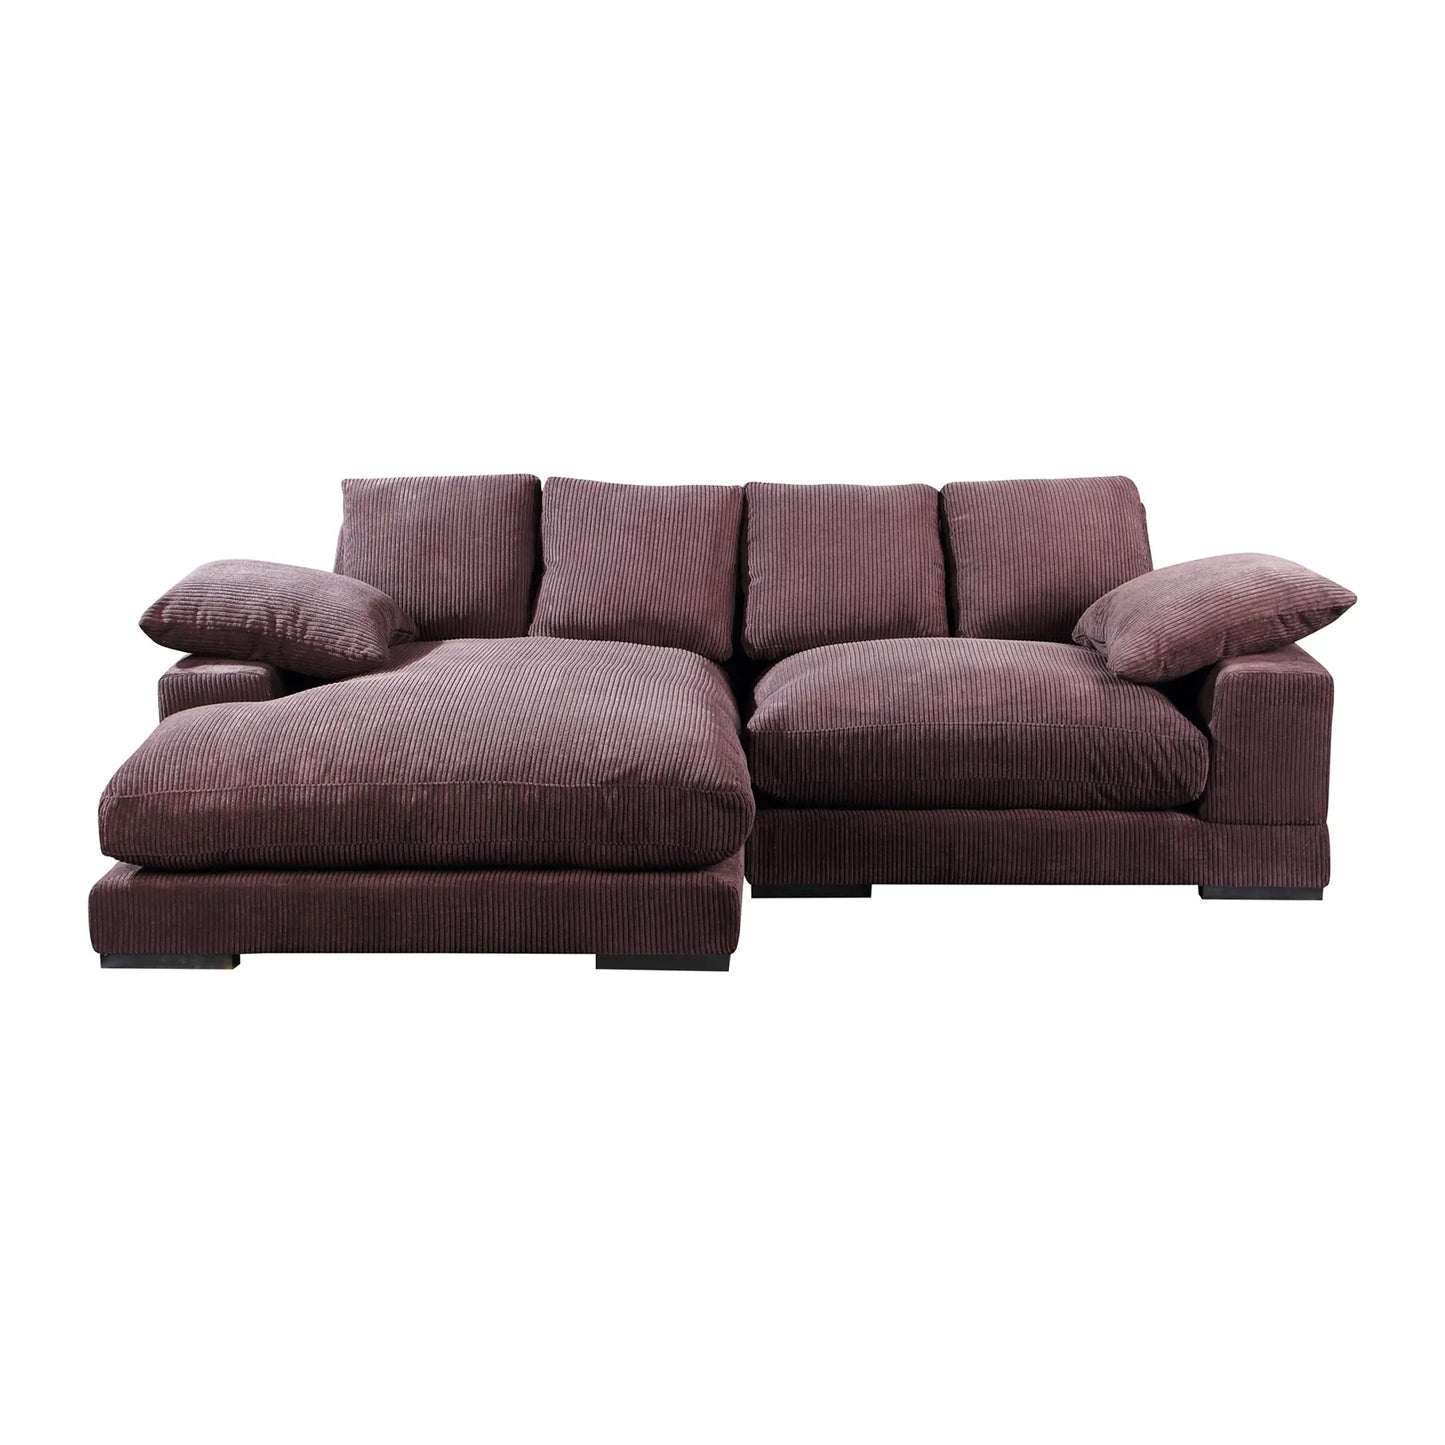 Plush Reversible Deep Seat Sectional Sofa, Dark Brown